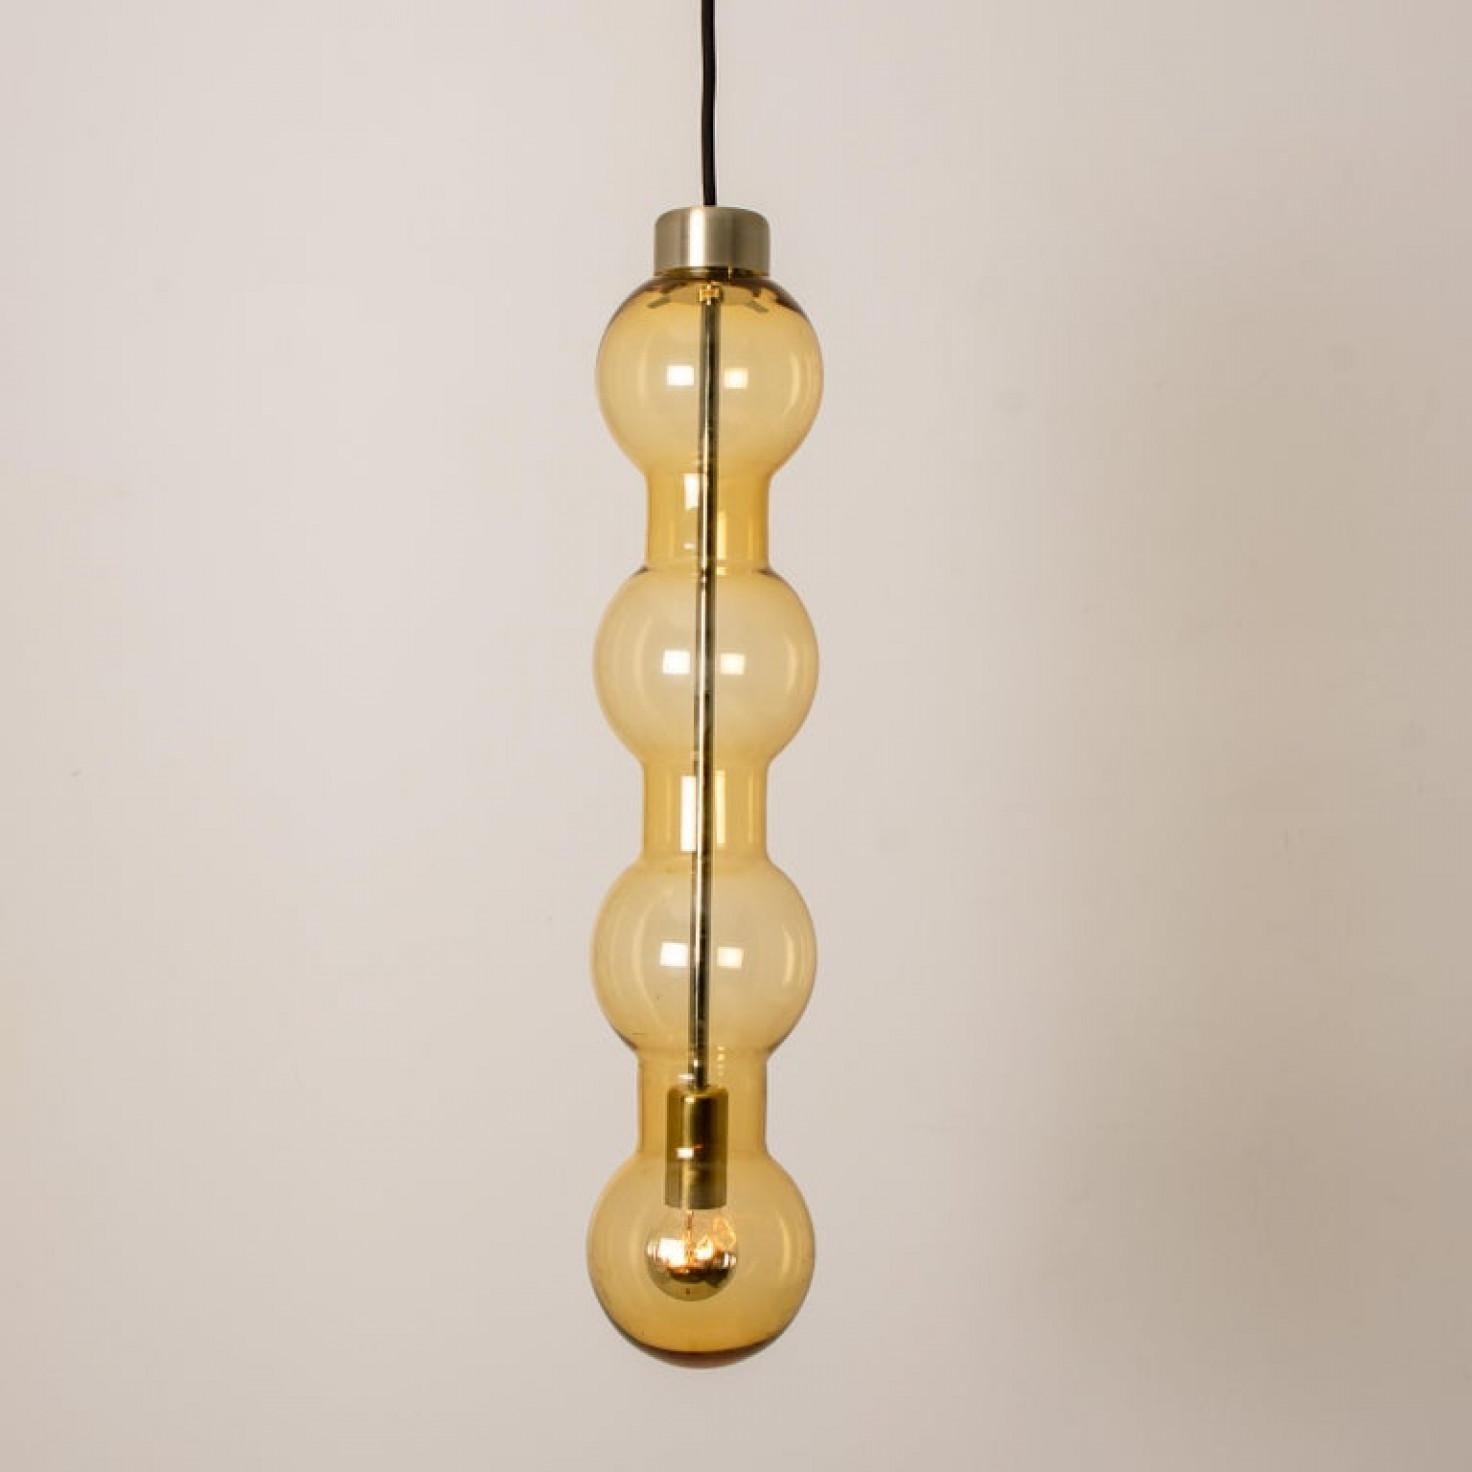 1 der 18 Cascade-Lampen in Blasenform, Modell 4309, hergestellt von Doria. Es eignet sich besonders für hohe Decken und Loungebereiche. Die vier großen Glasblasen erzeugen einen schönen Lichteffekt. Wir können die Leuchte mit Schnur oder Stange